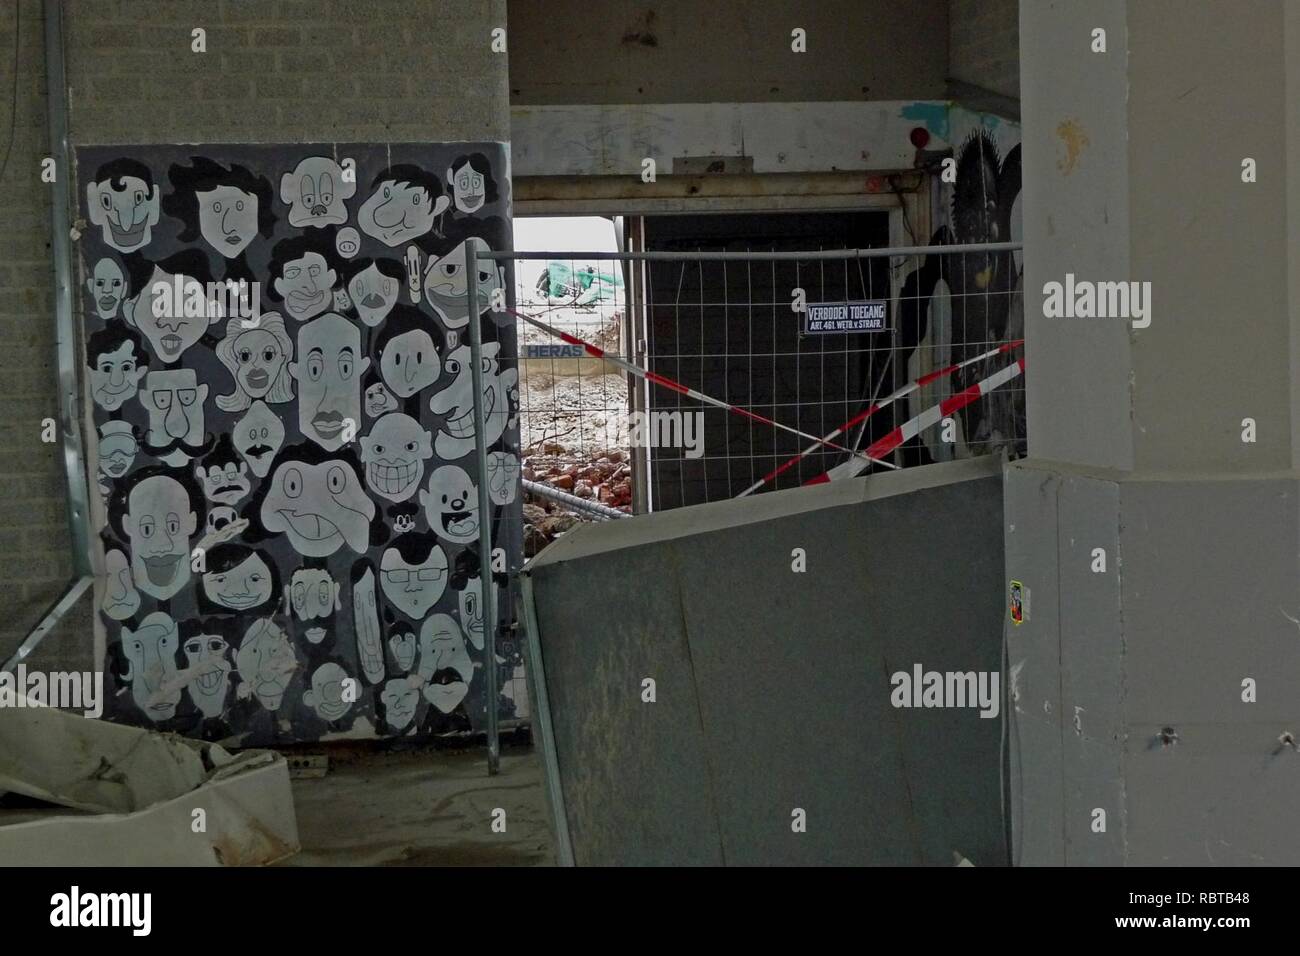 Une photo d'une peinture murale graffiti au sous-sol de l'ancien bâtiment des postes CS Amsterdam, Oosterdokseiland ; haut rfesolution FotoDutch, image, 2011. Banque D'Images